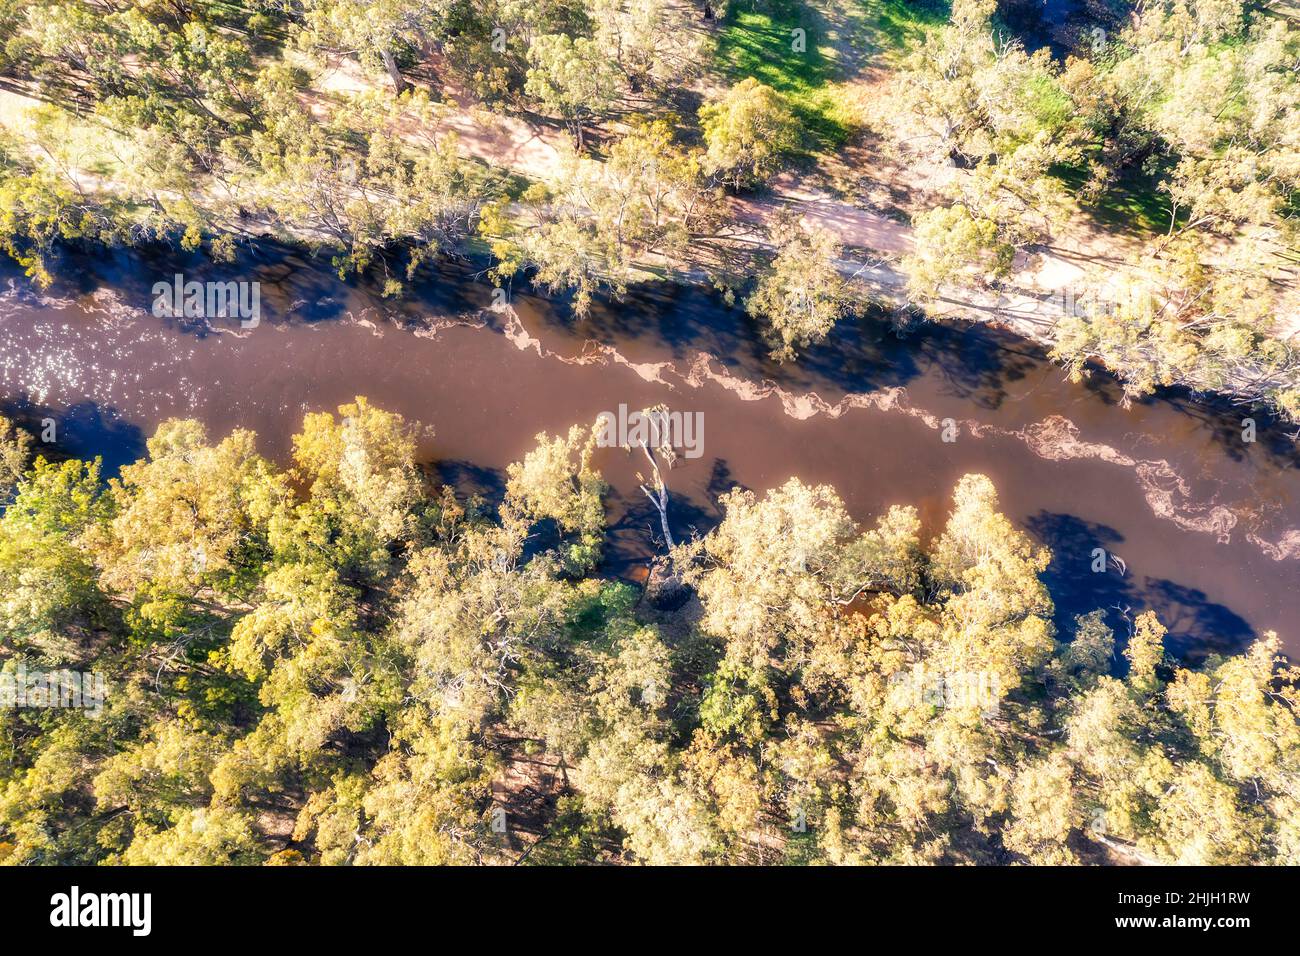 Draufsicht über den Murrumbidgee River in der ländlichen Regionalstadt Outback Australia - Balranald Wagga Wagga. Stockfoto